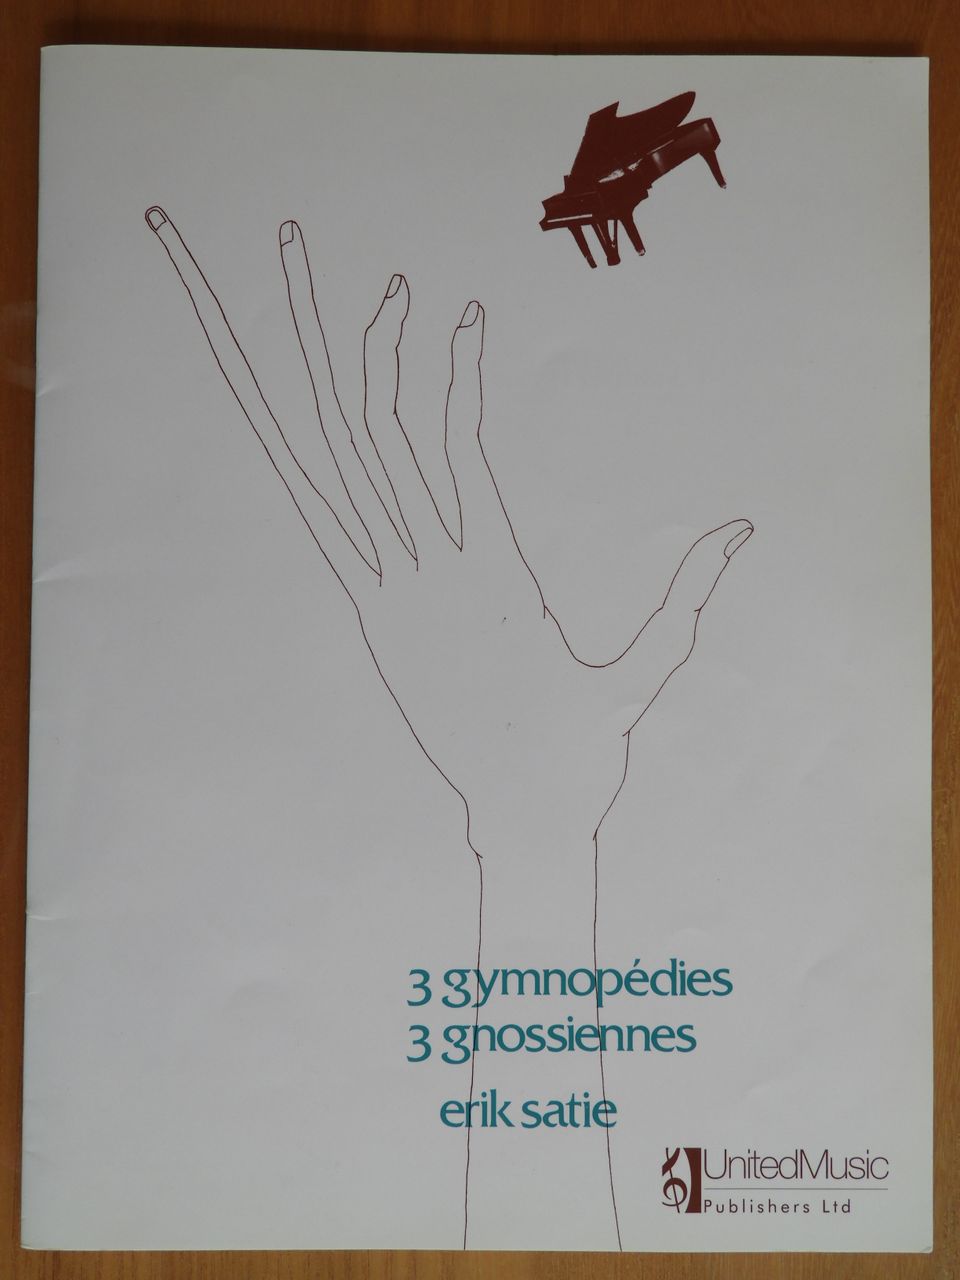 Erik Satie - 3 gymnopédies / 3 gnossiennes - Nuottikirja